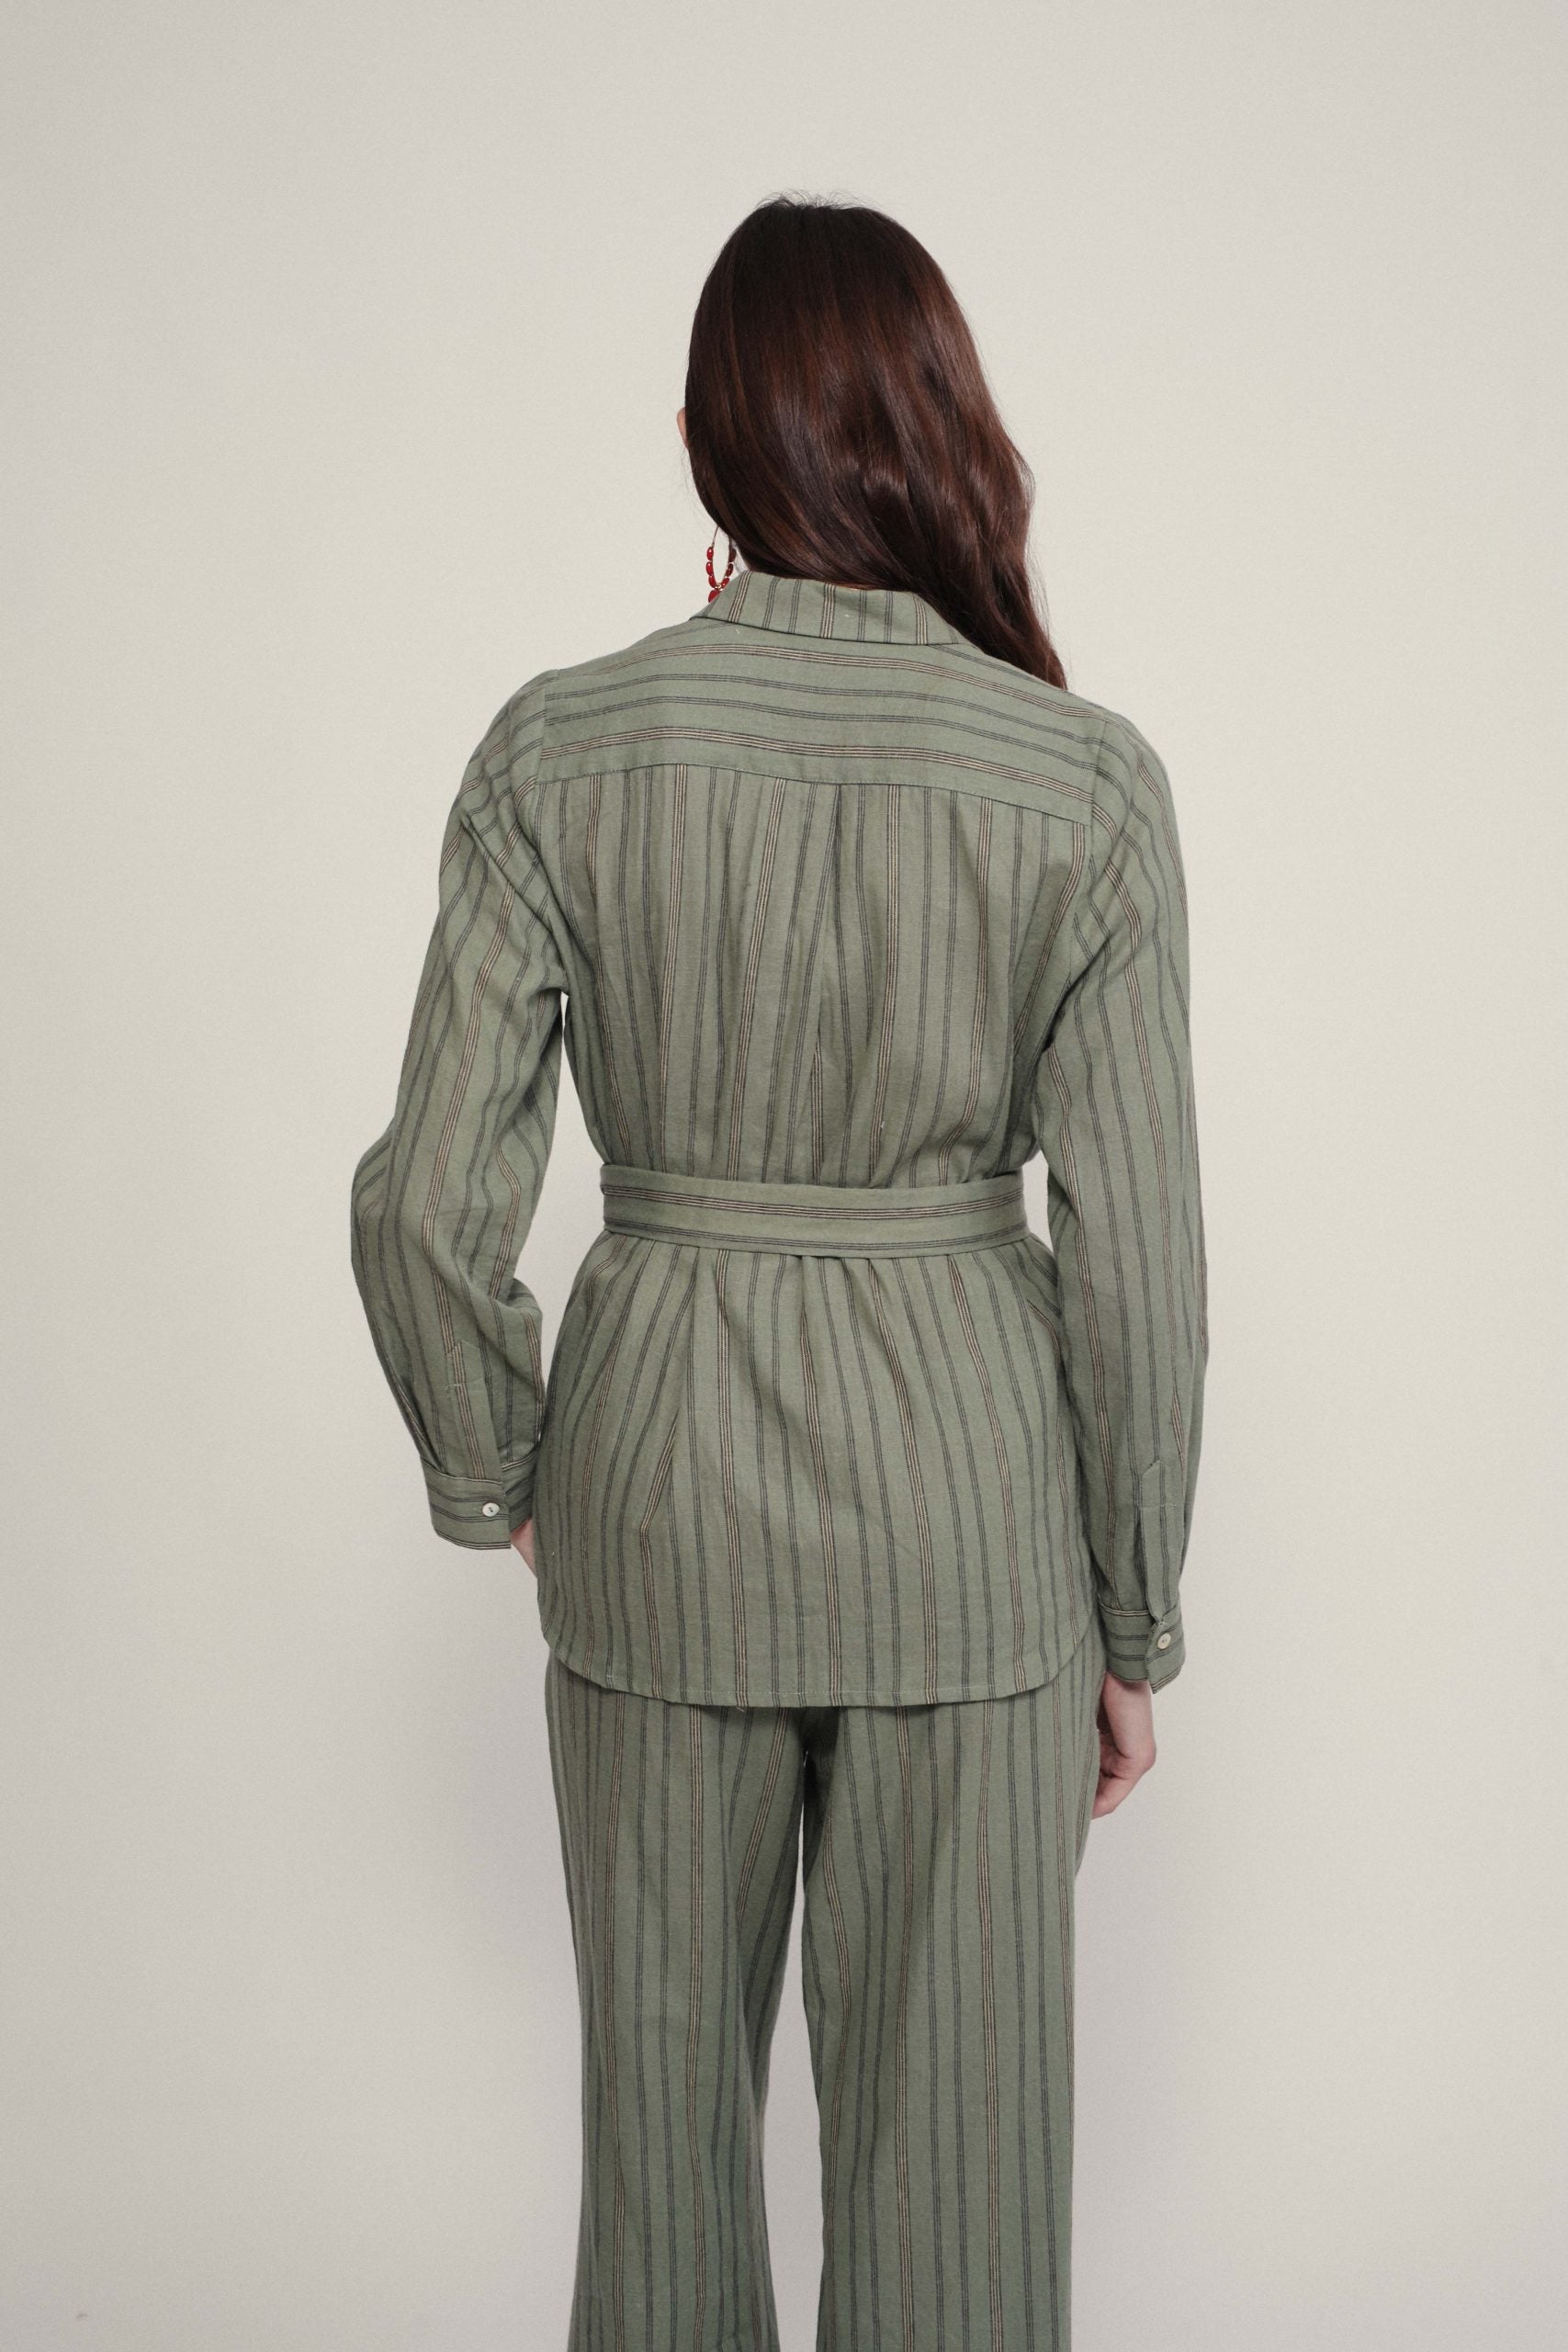 Blouse/jacket CALABRIA green khaki stripe